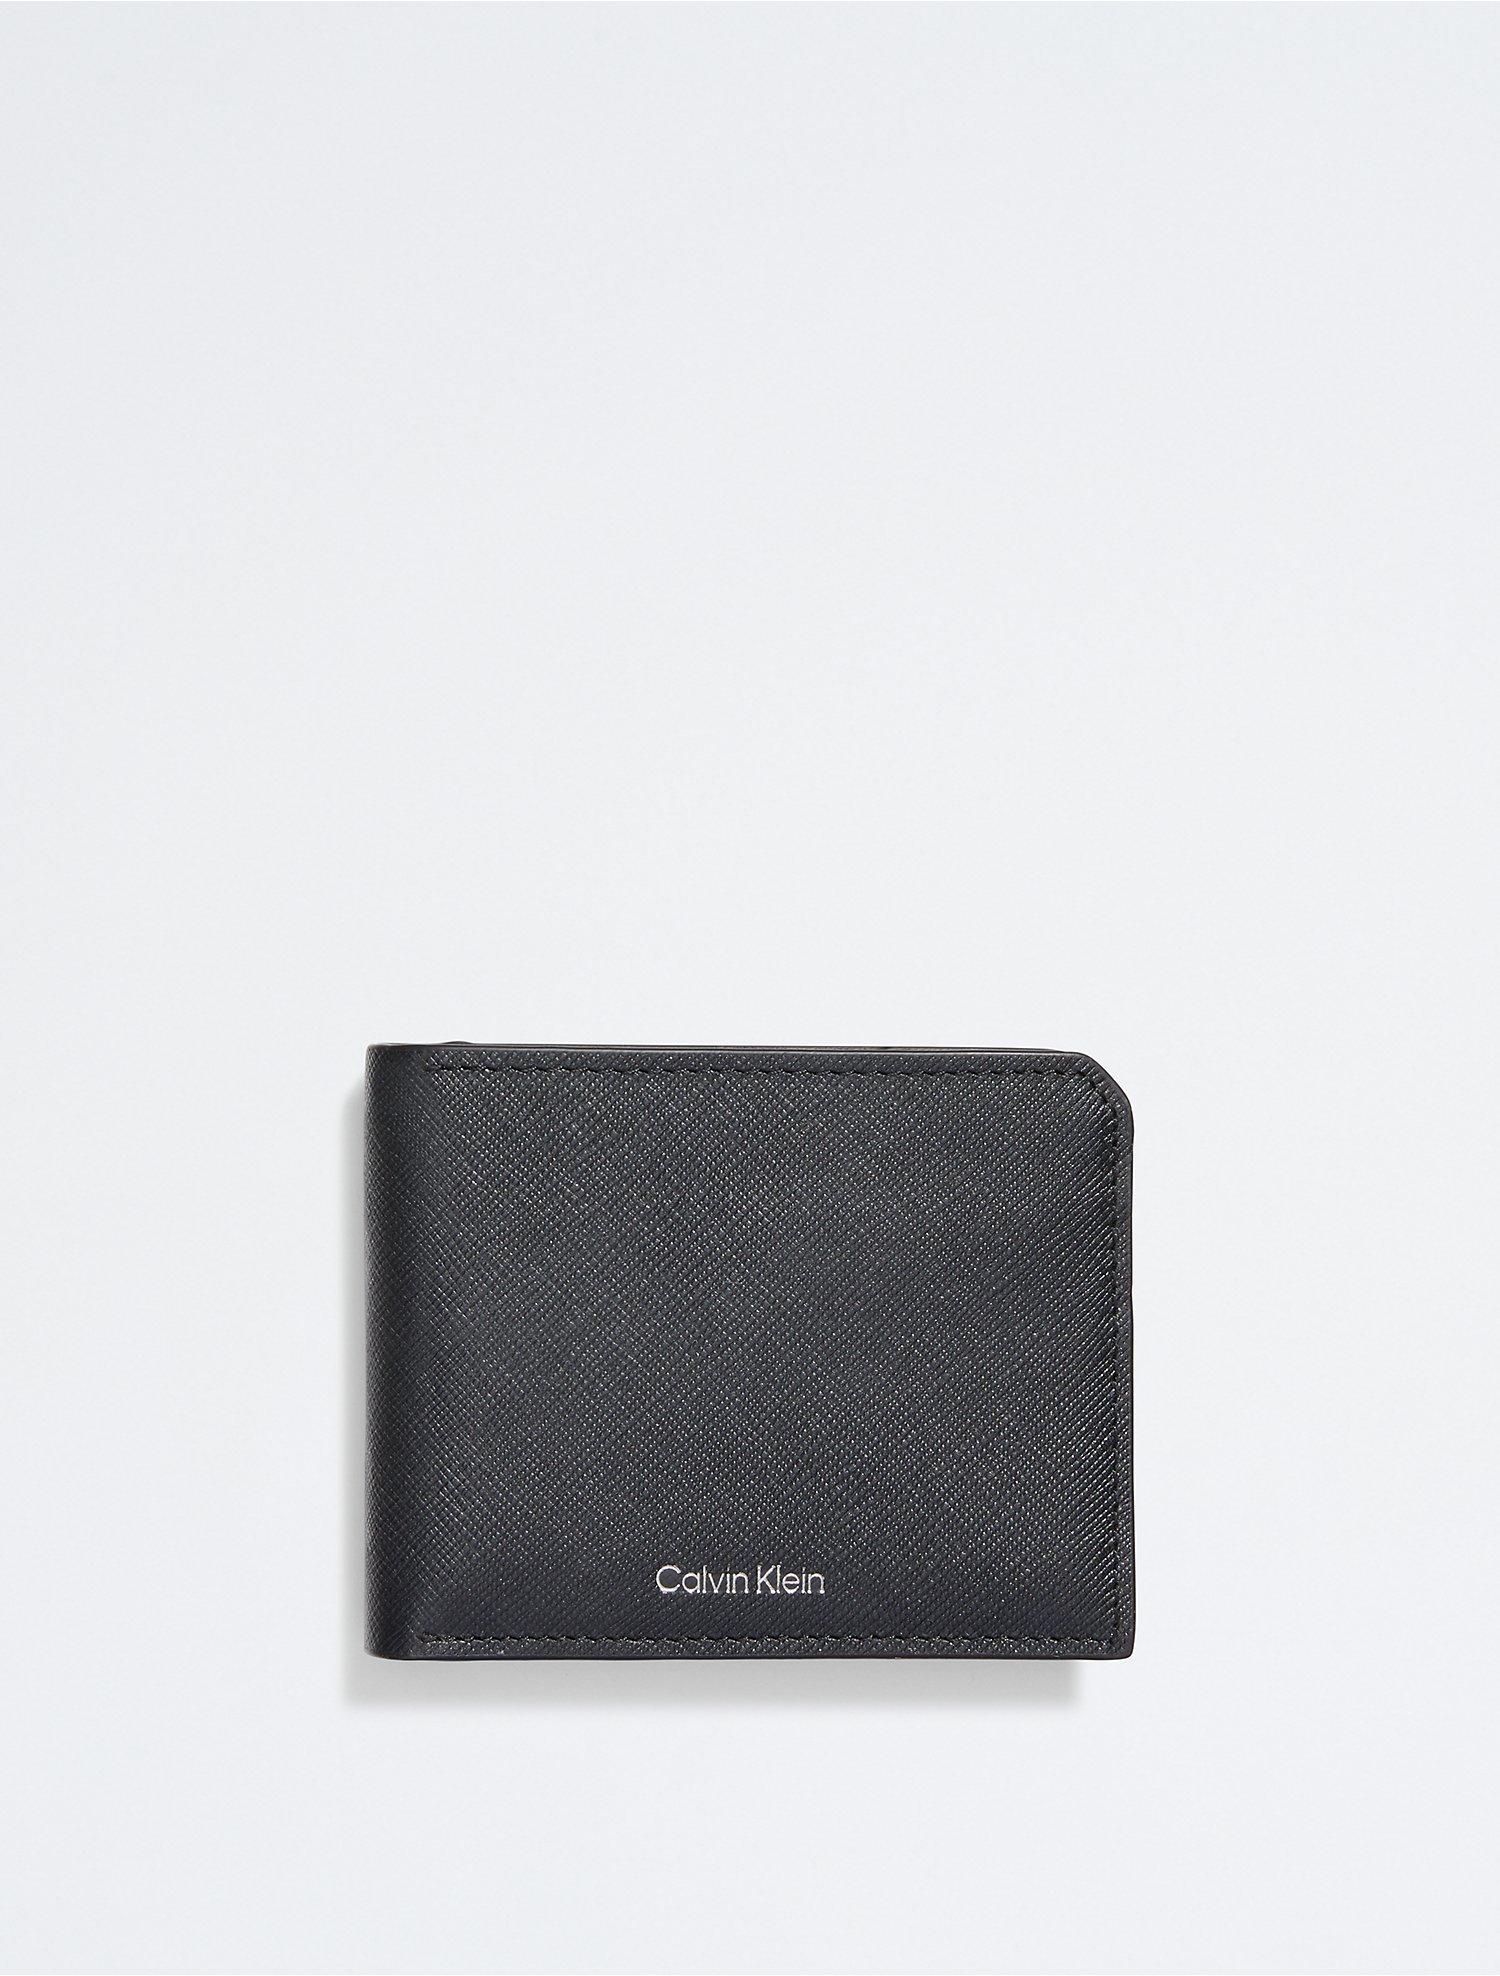 Conserveermiddel bron gespannen Saffiano Leather Coin Pouch Bifold Wallet | Calvin Klein